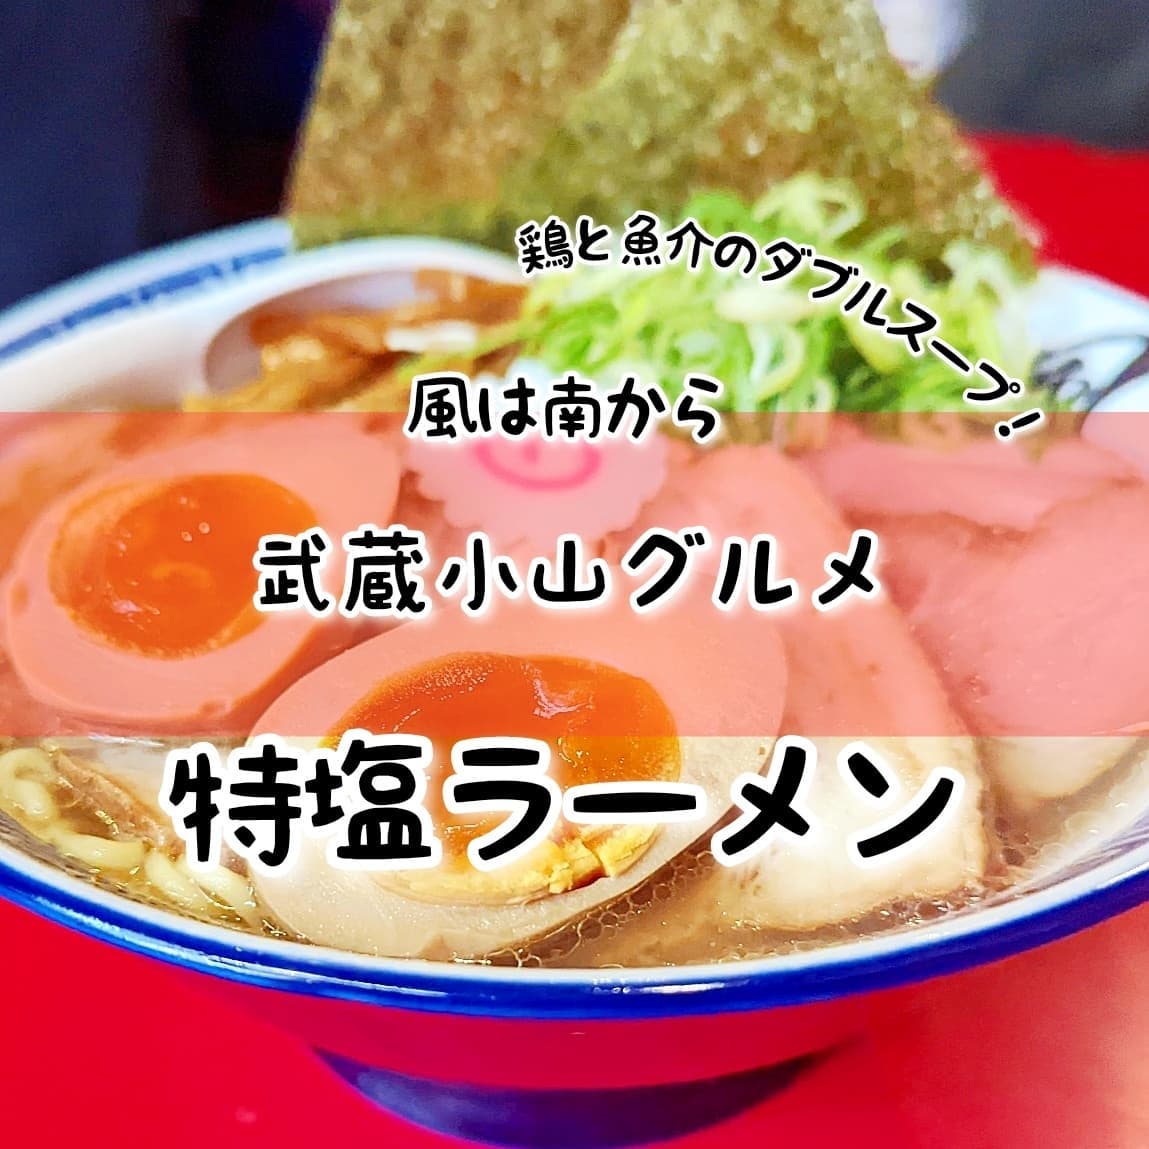 #武蔵小山グルメ情報 #風は南から #特塩ラーメン 冬の熱々ラーメンは美味いに決まってる！鶏と魚介のあっさり系のスープも好きですが、中華香辛料的な謎の風味を感じる柔らかチャーシューがうまいね！おもいで度－－☆－－ #侍猫度マイルド系－－☆－－スパイシー系あっさり系－☆－－－コッテリ系シンプル系－－☆－－ゴロゴロ系オールド系－－☆－－ニュー系グルグルナルトが映える鶏と魚介のダブルスープが美味しい塩ラーメン！中太麺の存在感を感じる麺と八角的な独特な風味のある柔らかチャーシューが美味い！このお店は、鶏と魚介のダブルスープがうりのラーメン屋さん。今流行の家系ラーメンとは違う昔ながら感が良いですよね。場所は、商店街を西小山方面に進んで26号線を左へ曲がったらすぐでございます。 もっと武蔵小山のお店を探す時はメインサイトが見やすいですぞ！プロフィール画面に記載のURLからGO！→@musashikoyama.news ※本店だと地図が見やすくなっとります。画像やら記事もちょいとだけ違う感じになっとりますよ！【武蔵小山情報募集】おすすめのお店やらメニューがございましたら侍猫さんの食べに行くリストへ追加しますので、コメントやらメッセージやらでうまいこと教えてくださいな！…きっと行きます。 #武蔵小山 #武蔵小山情報 #武蔵小山ランチ #ランチ #グルメ #武蔵小山商店街 #武蔵小山パルム #武蔵小山商店街パルム #武蔵小山駅 #武蔵小山グルメ #武蔵小山ランチ #武蔵小山ディナー #武蔵小山食事 #武蔵小山モーニング #東京 #東京グルメ #東京 #東京グルメ  #musashikoyama #tokyofood #tokyo #ラーメン